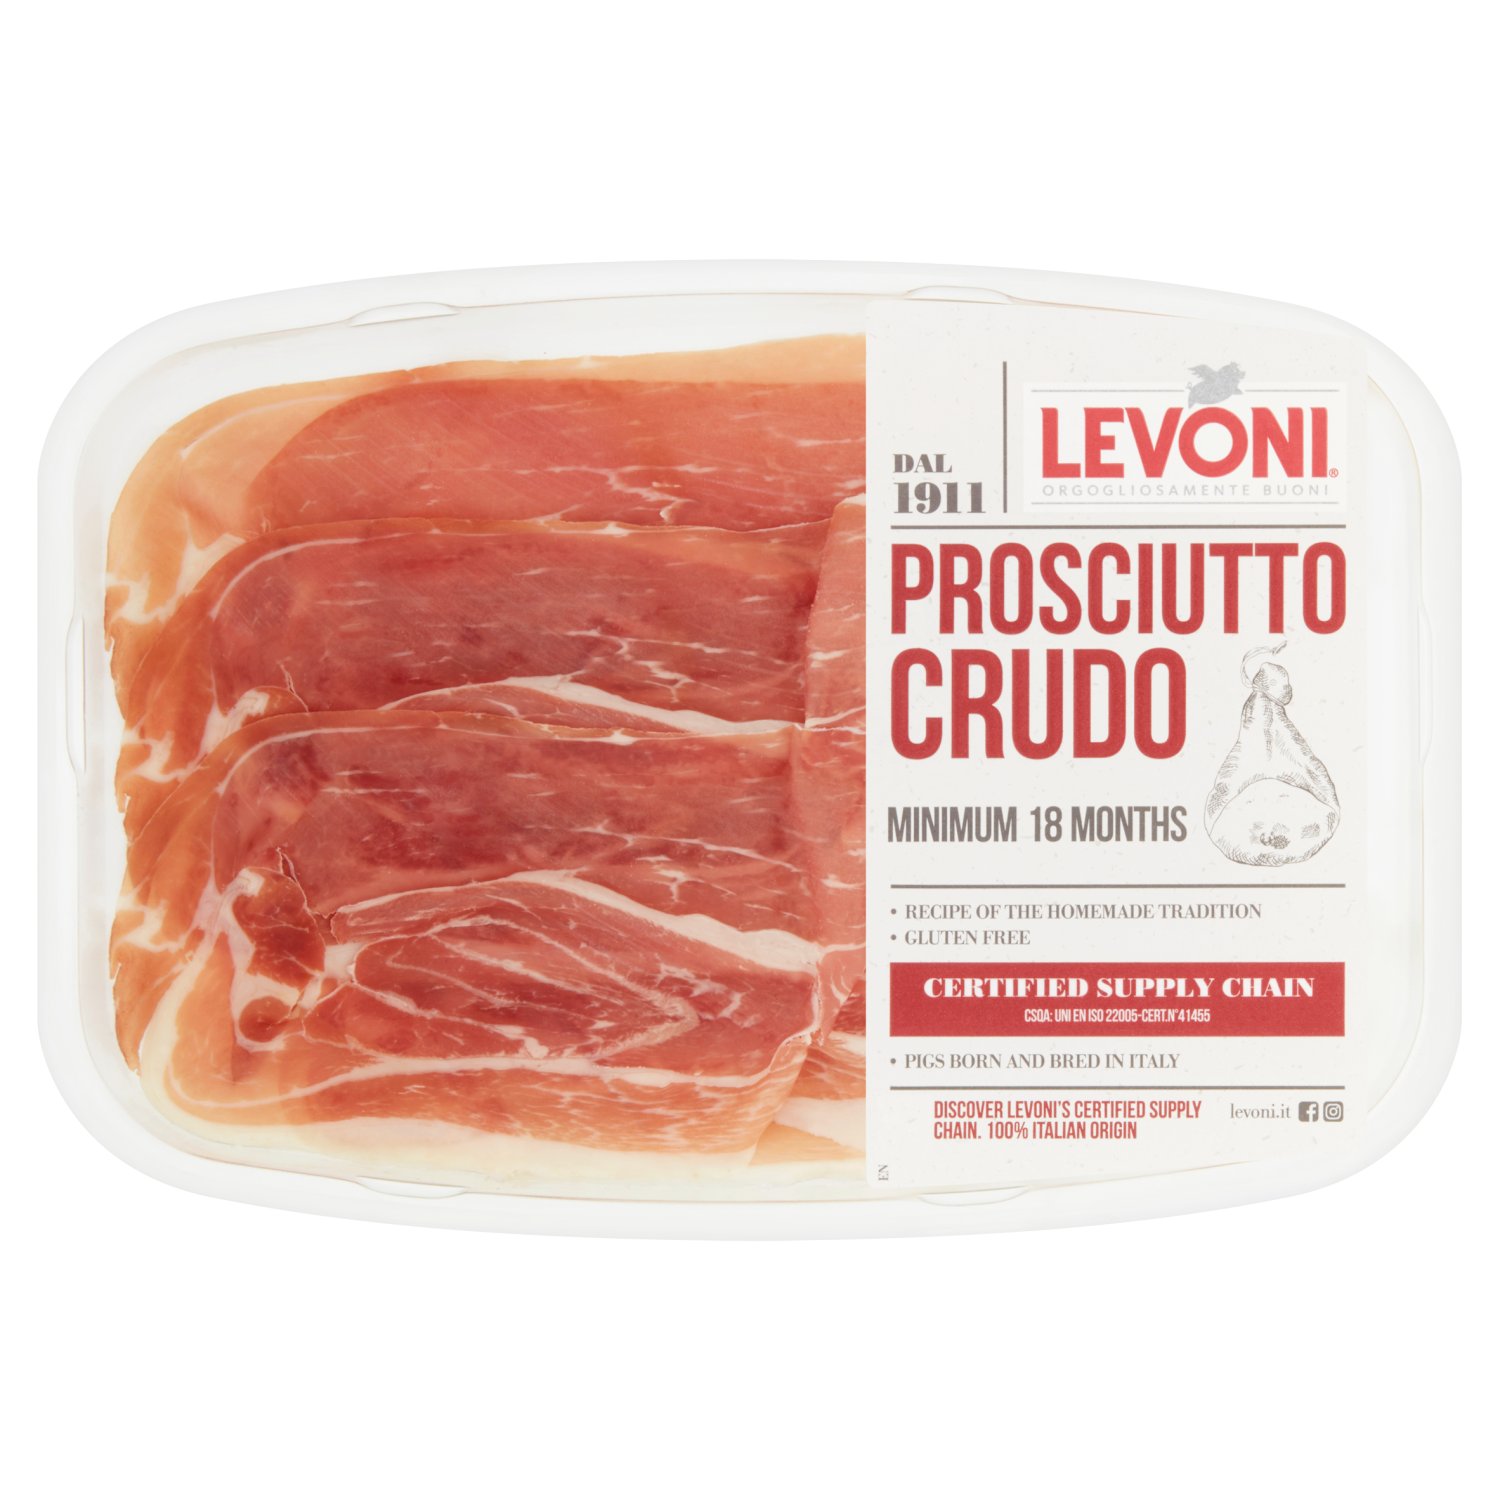 Levoni Prosciutto Crudo Slices (70 g)